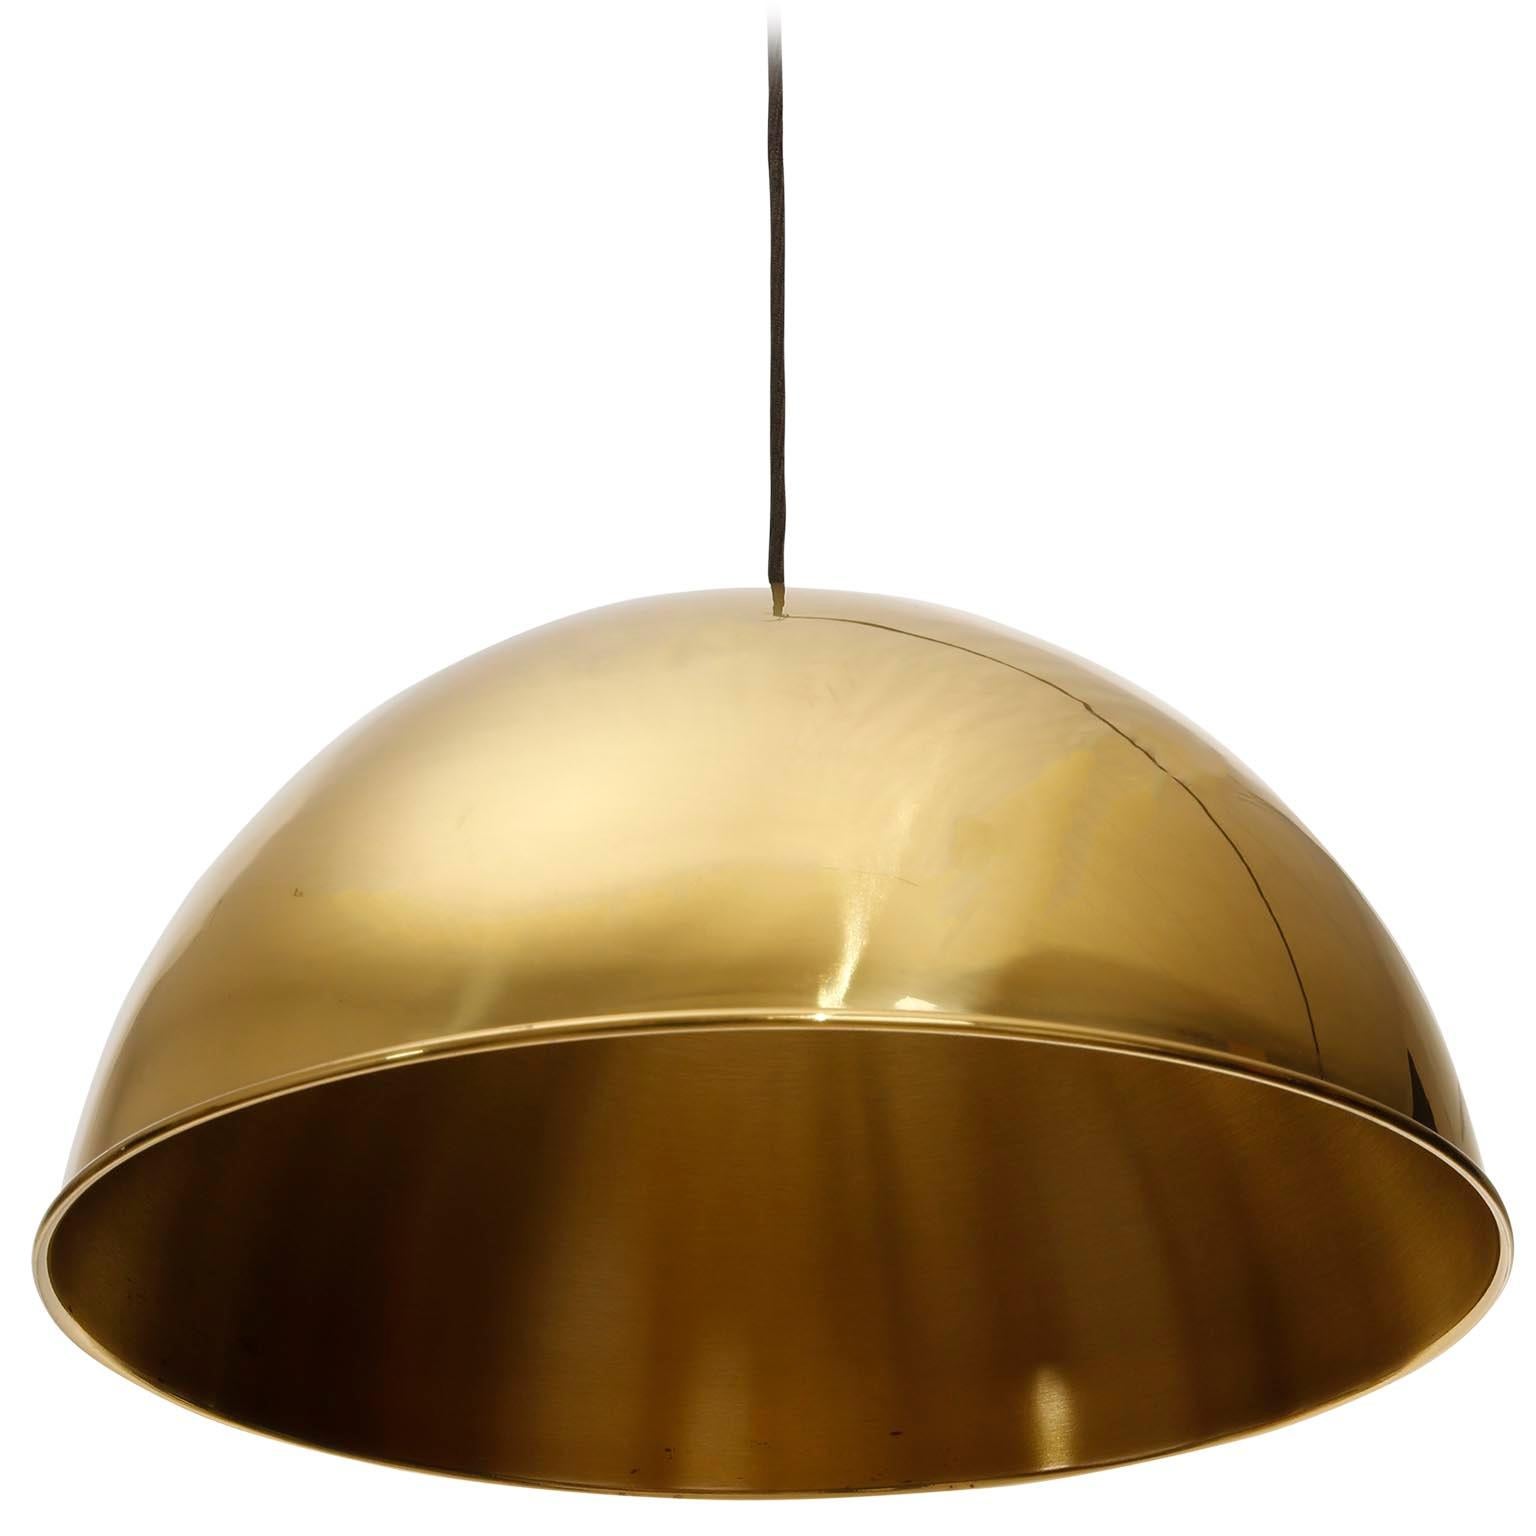 Mid-Century Modern Florian Schulz Dome Pendant Light, Brass Counterweight Counter Balance, 1970